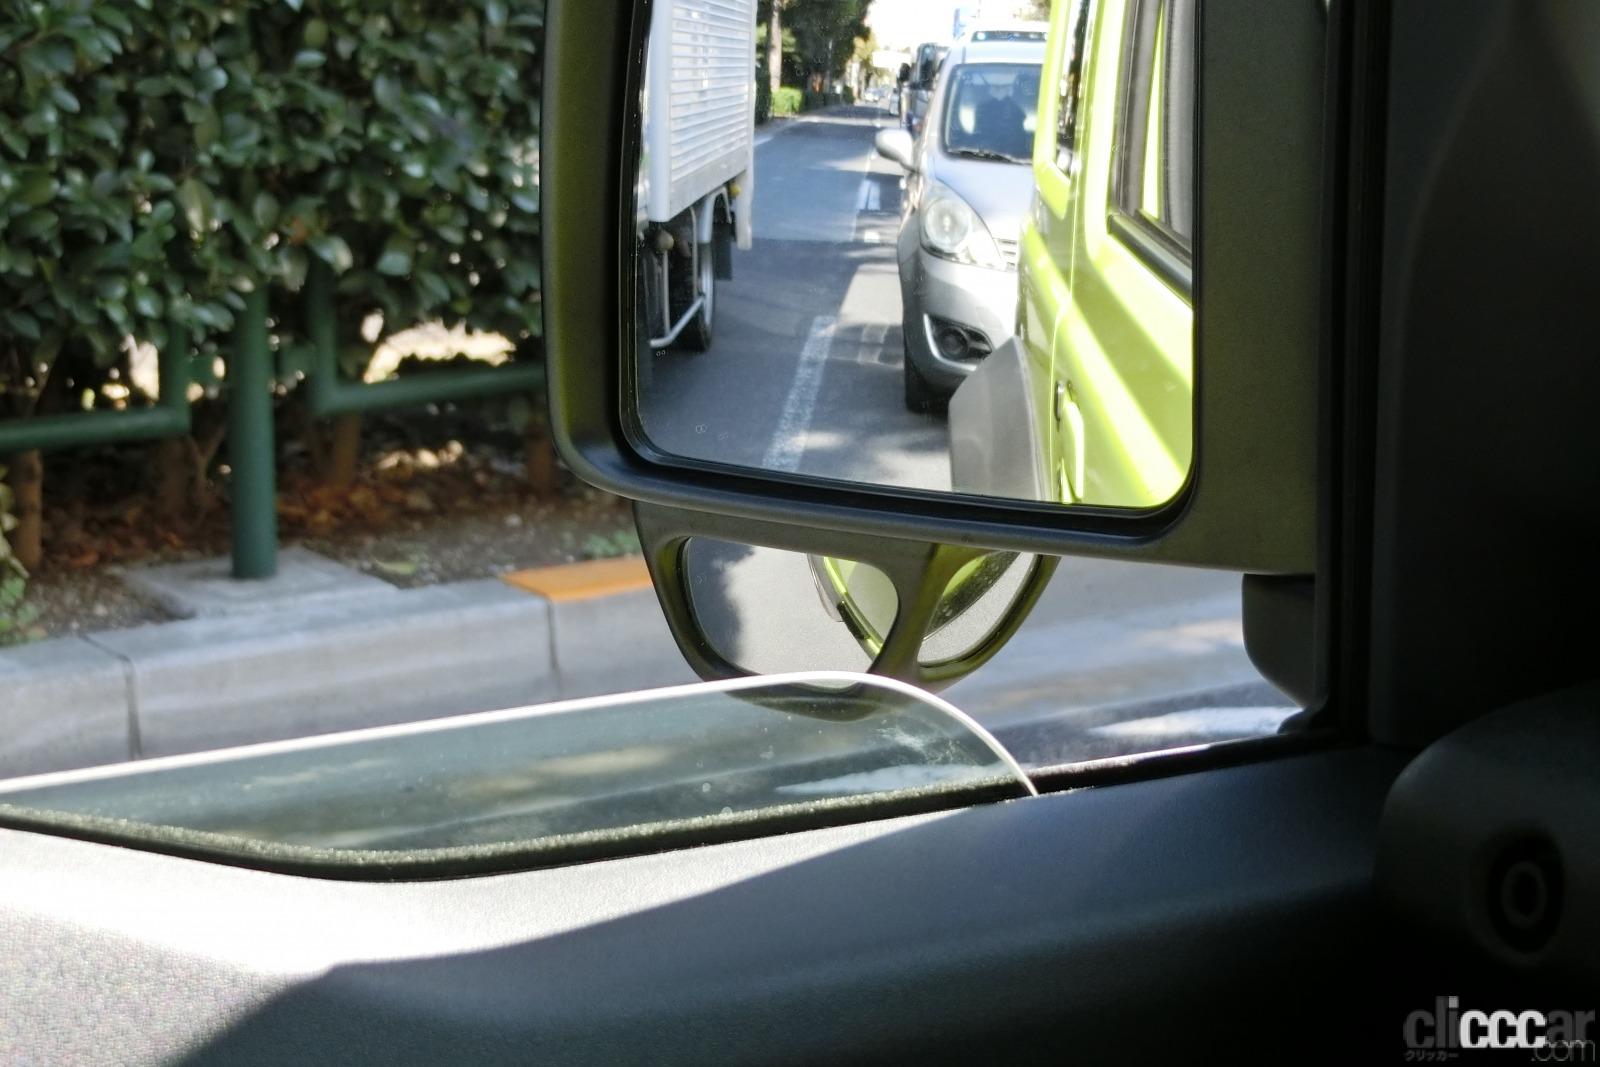 Jimny Sierra 18 Under Mirror 画像 Suv車種などのサイドアンダーミラーはなぜ必要 付いてる意味 鏡に映る像の見方は 真夏の汗だく実験で探ってみた Clicccar Com